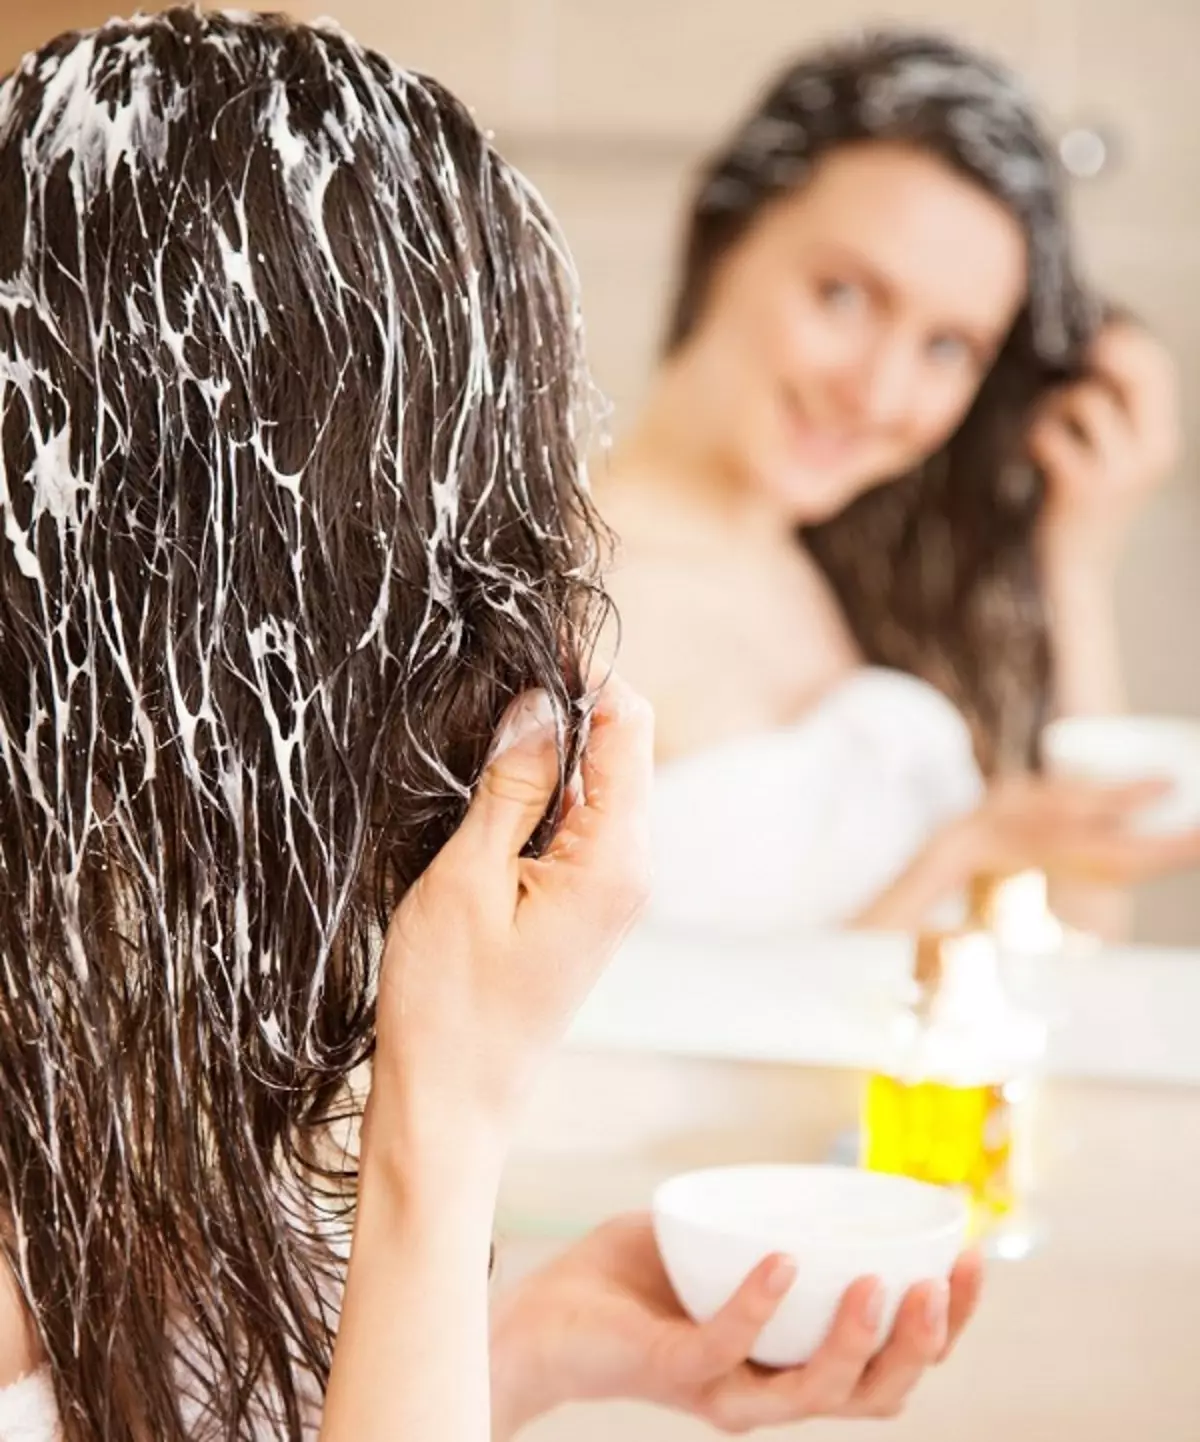 رعاية للشعر رقيقة: إجراءات لاستعادة الشعر الرقيق ونادرة في المقصورة وفي المنزل 16765_10